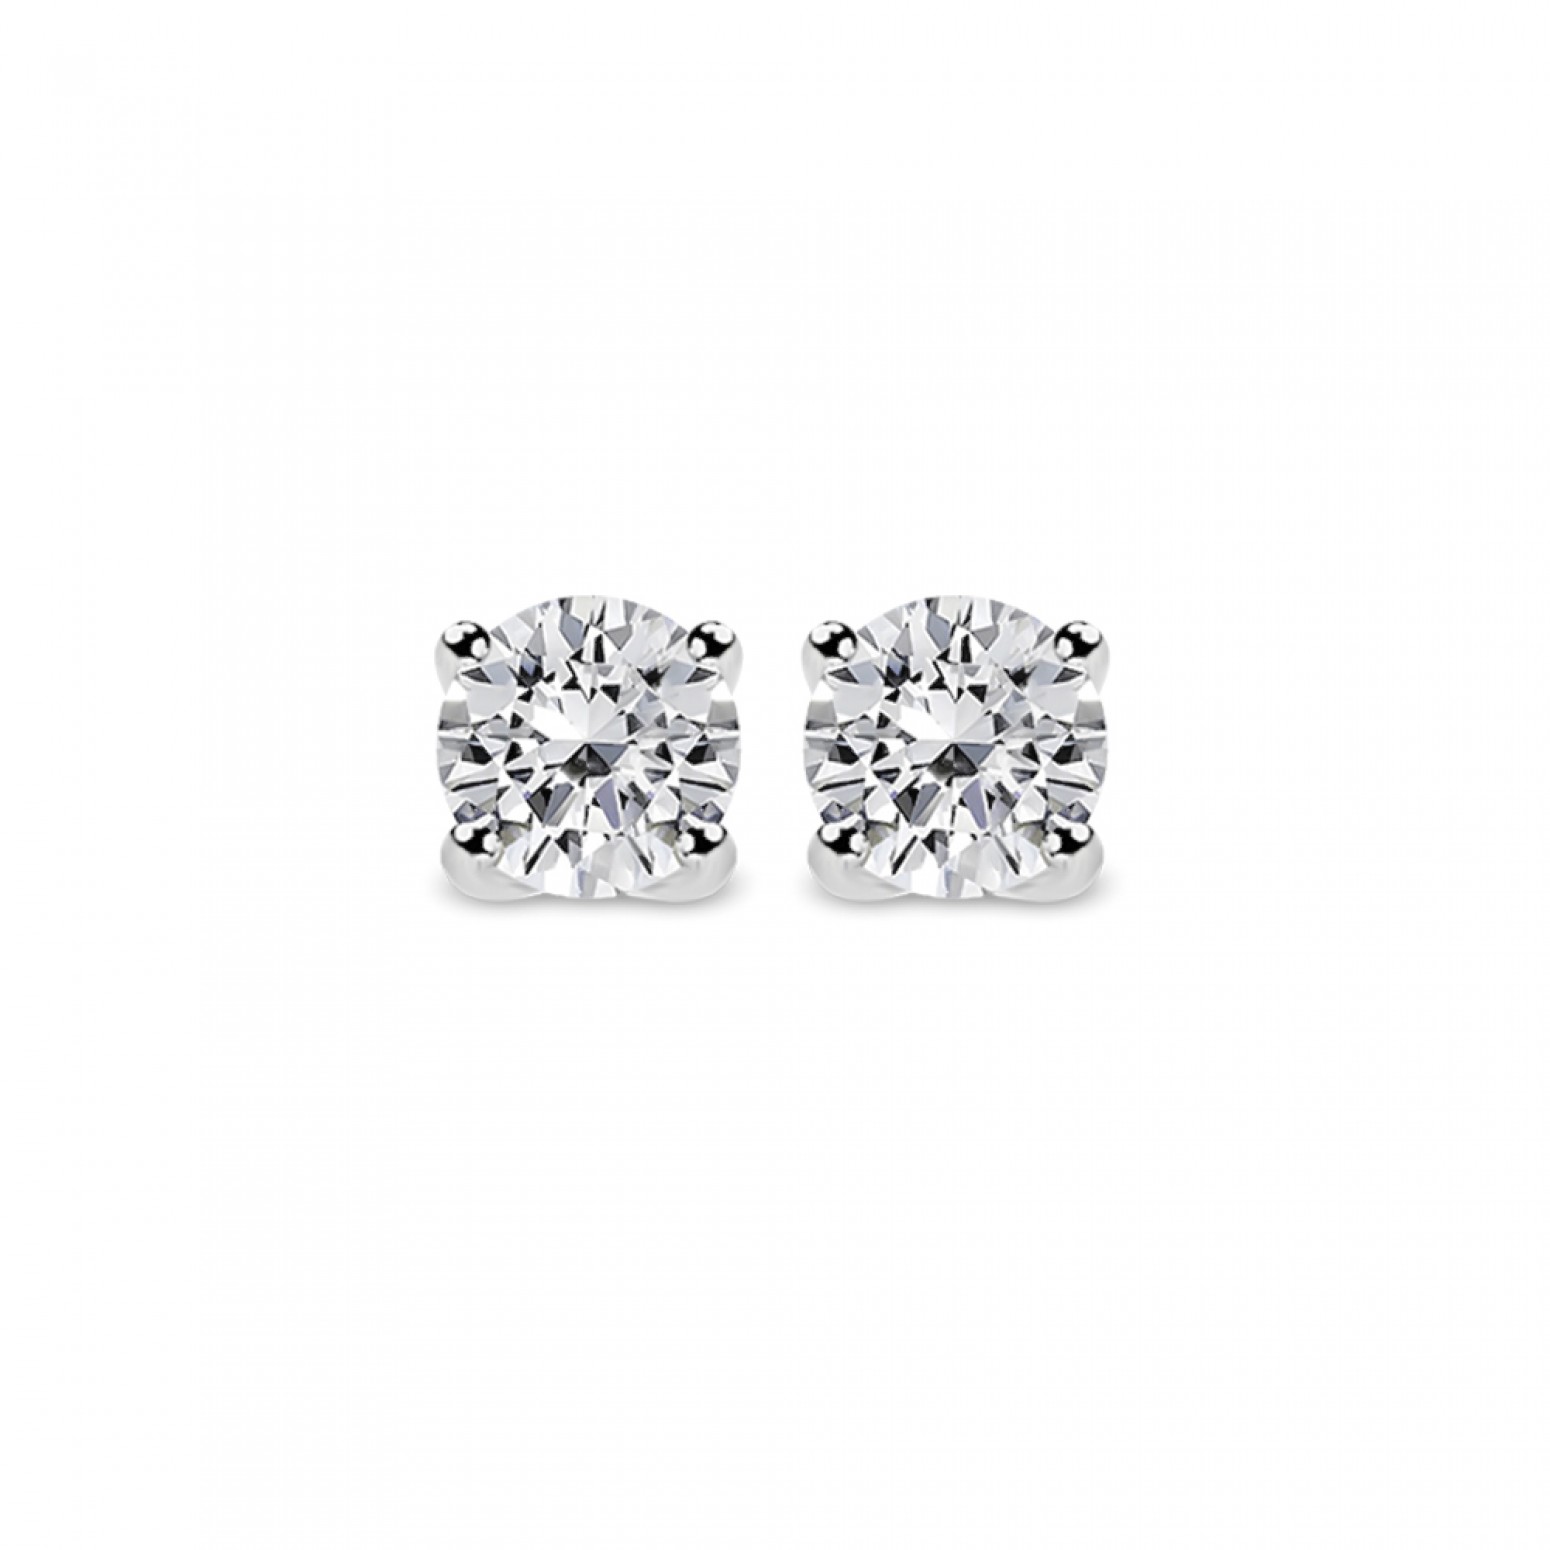 Solitaire earrings 18K white gold with diamonds 0.36ct, VS2, F from IGL sk2056 EARRINGS Κοσμηματα - chrilia.gr